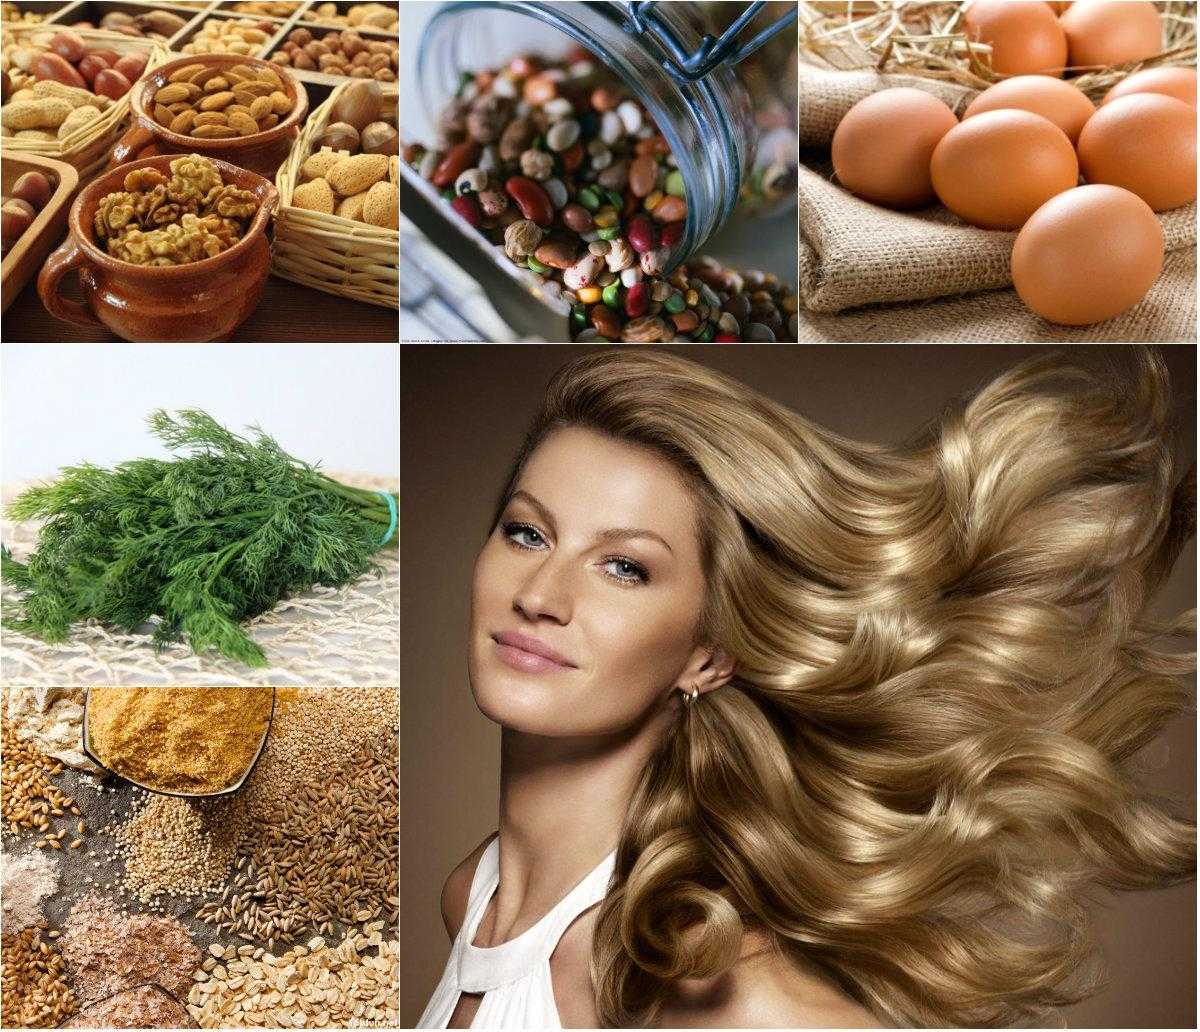 Питание для роста волос - продукты питания и витамины